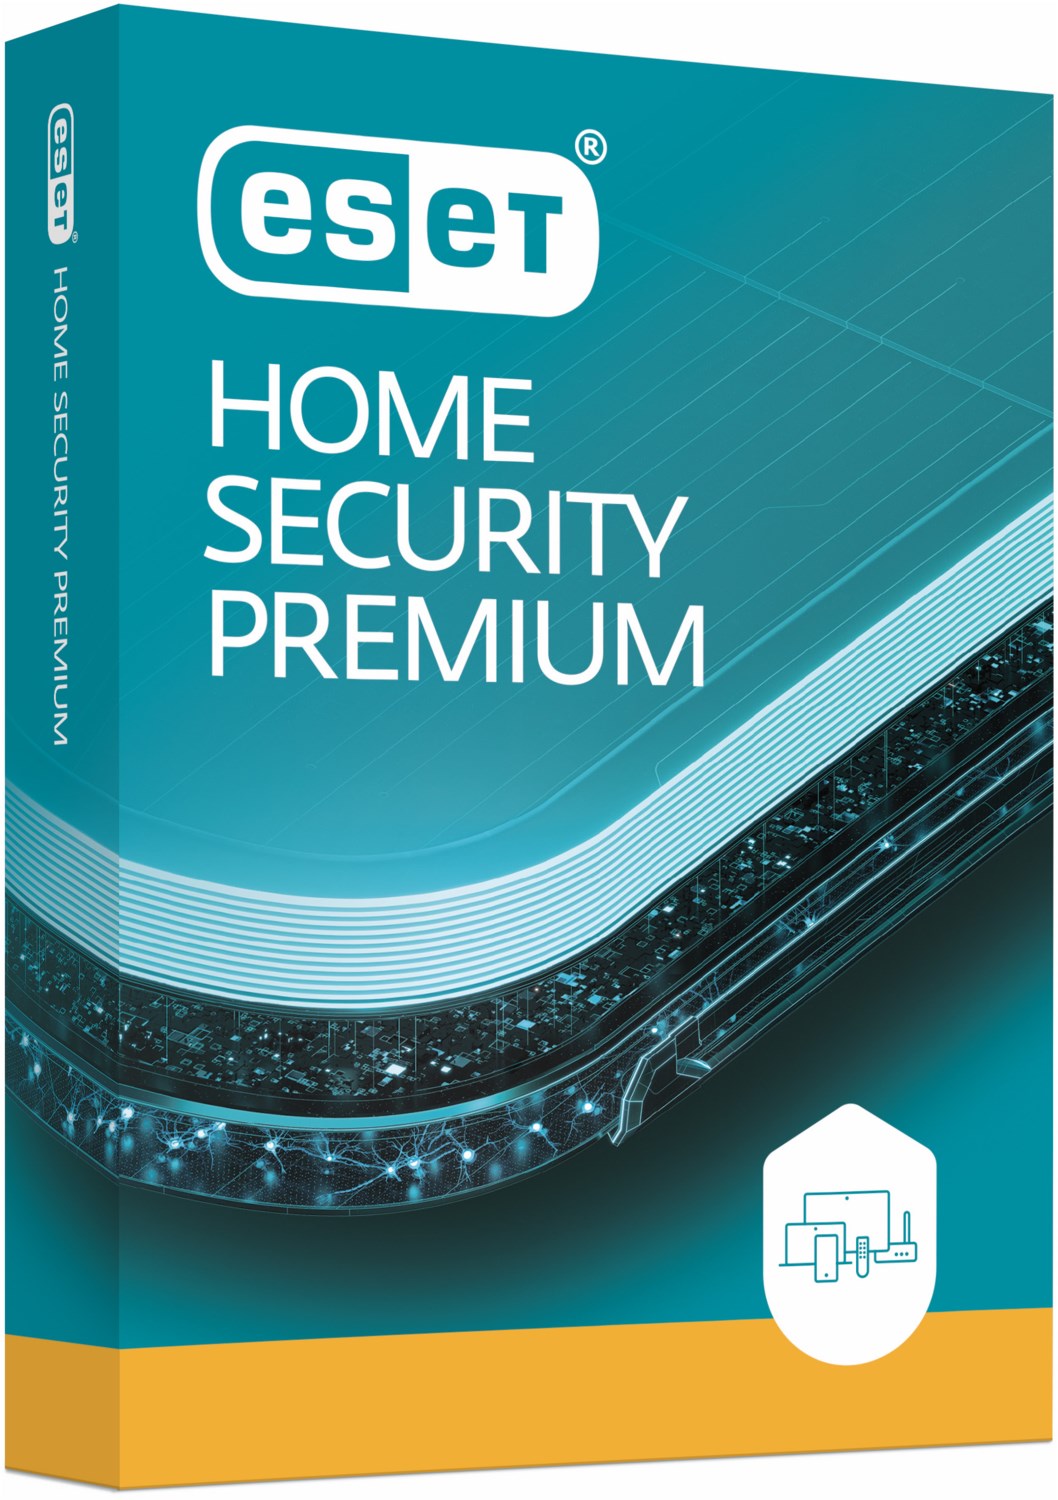 Home Security Premium für 3 Geräte von Eset